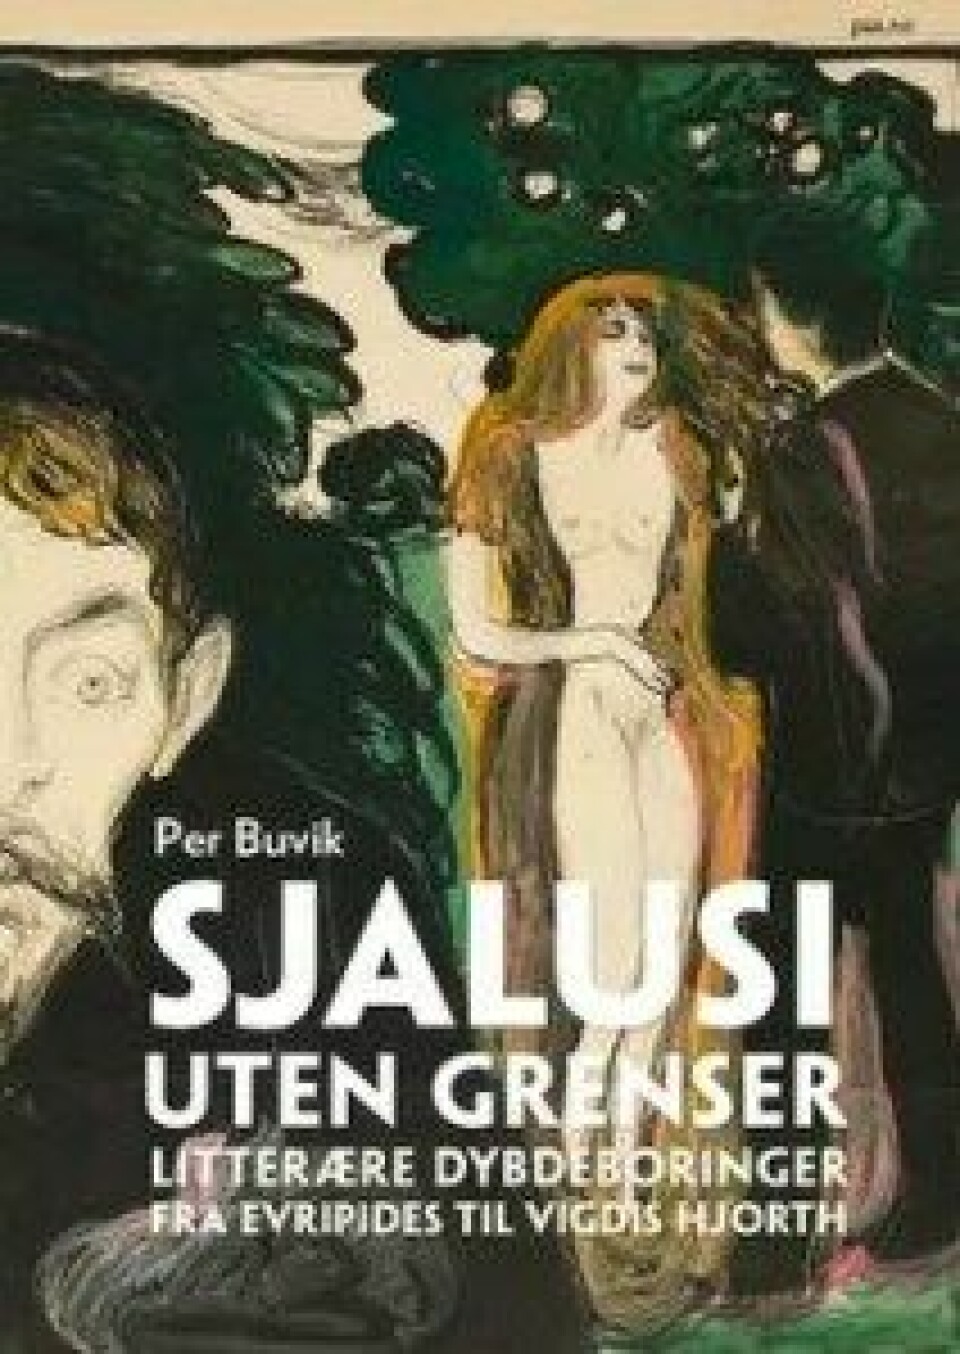 Sjalusi uten grenser av Per Buvik, utgitt av Pax, 2016.